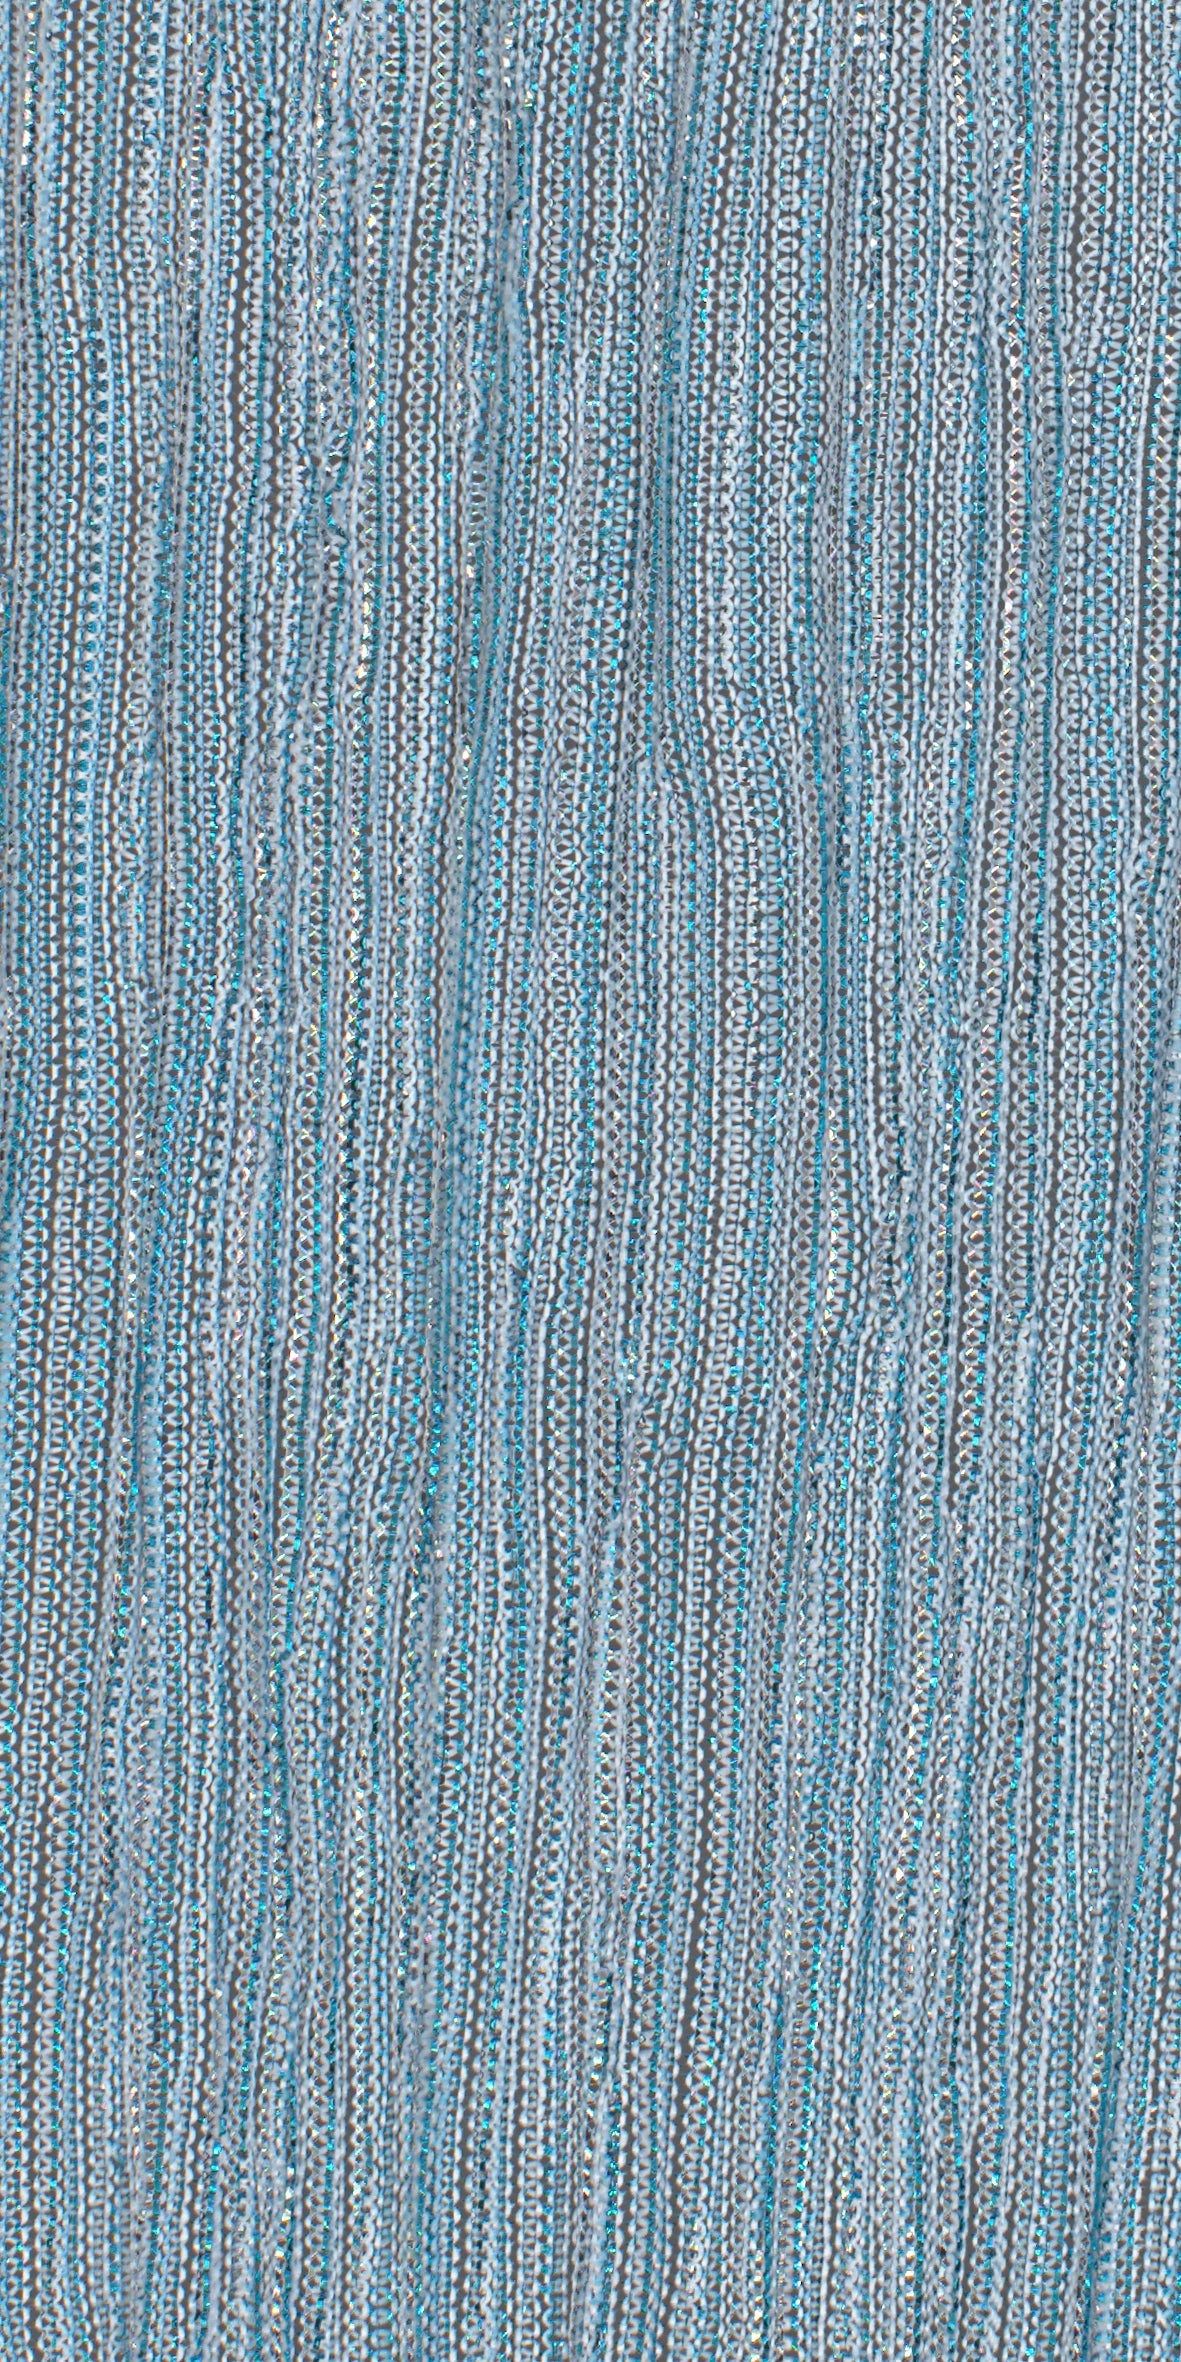 12006-08 Light Blue Silver Metallic Pleat Plain Dyed Blend 126g/yd 56" blend blue knit metallic plain dyed pleat ppl new silver Metallic, Pleat - knit fabric - woven fabric - fabric company - fabric wholesale - fabric b2b - fabric factory - high quality fabric - hong kong fabric - fabric hk - acetate fabric - cotton fabric - linen fabric - metallic fabric - nylon fabric - polyester fabric - spandex fabric - chun wing hing - cwh hk - fabric worldwide ship - 針織布 - 梳織布 - 布料公司- 布料批發 - 香港布料 - 秦榮興